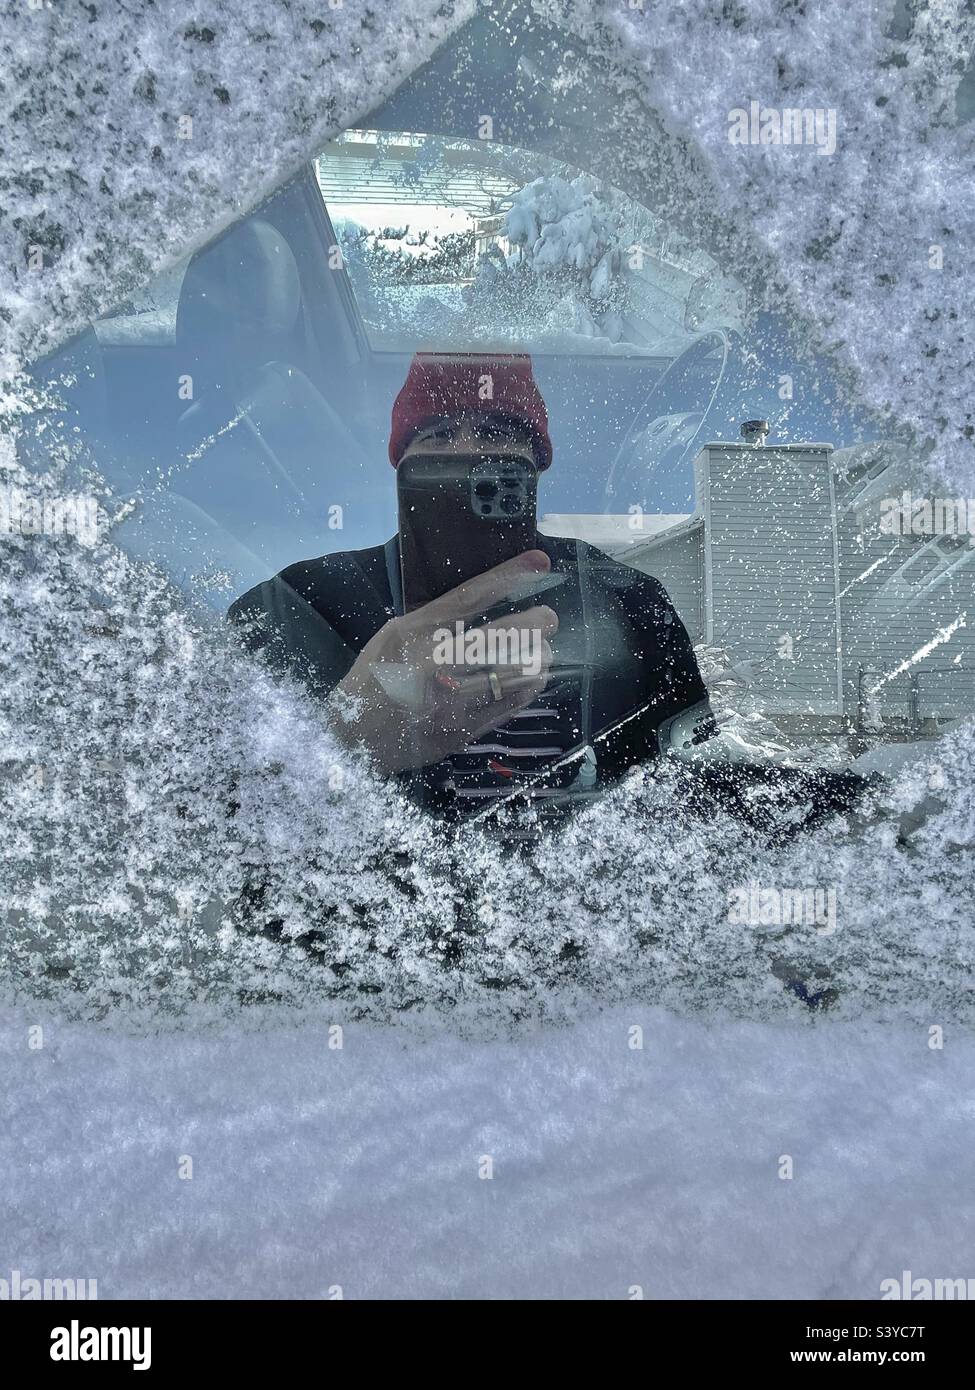 Neve fresca e ghiaccio sono stati raschiati da un finestrino lato passeggero dopo una forte nevicata si è verificata durante la notte in questo quartiere dello Utah, Stati Uniti, con conseguente selfie involontario in vetro riflesso finestra. Foto Stock